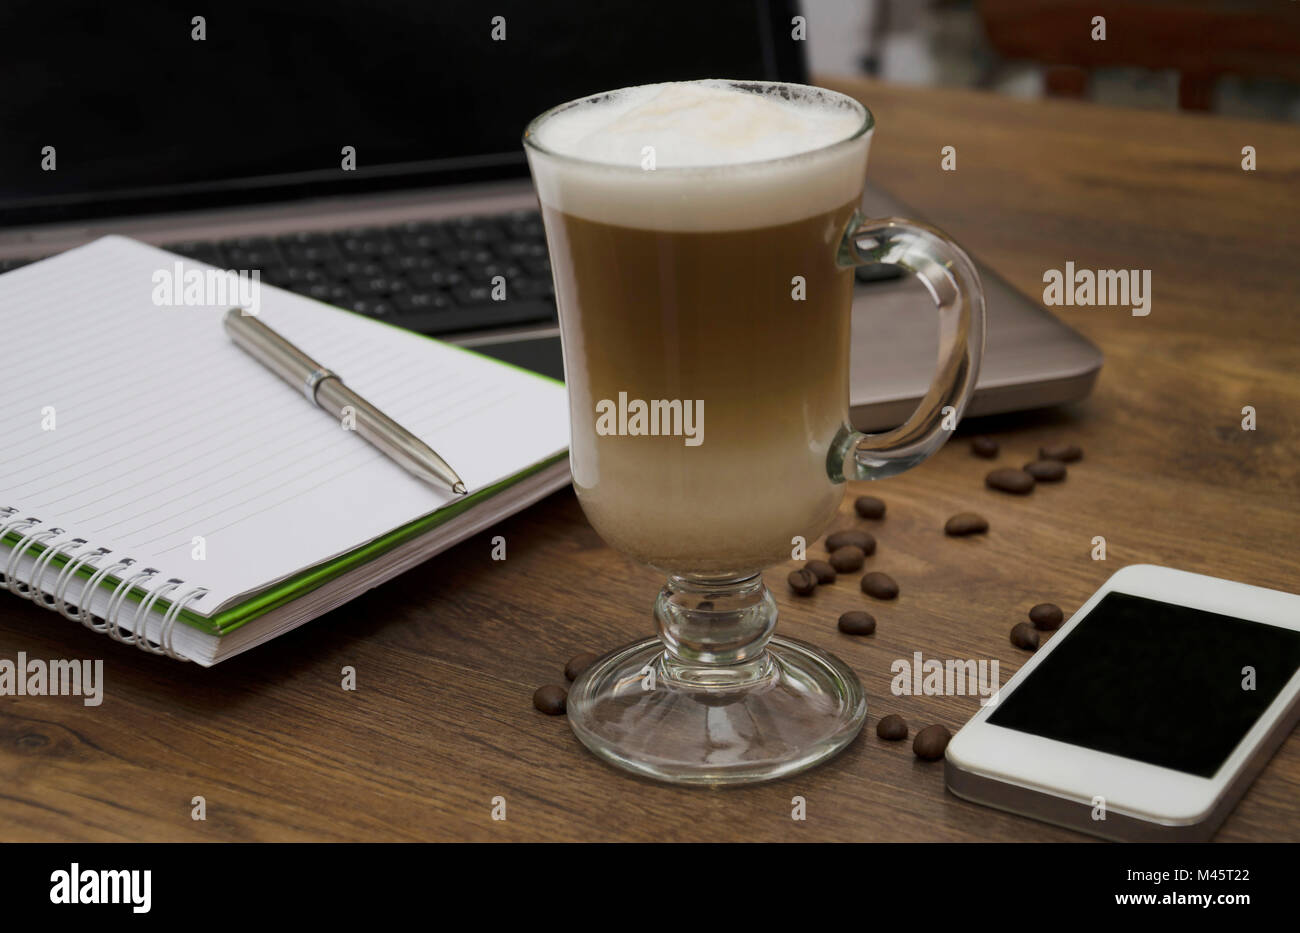 Heißes Getränk und Kaffee und Milch, Latte, Cappuccino, in einem schönen Glas Glas, Telefon, Notepad für Notizen und einen Stift auf dem Computer Hintergrund Stockfoto